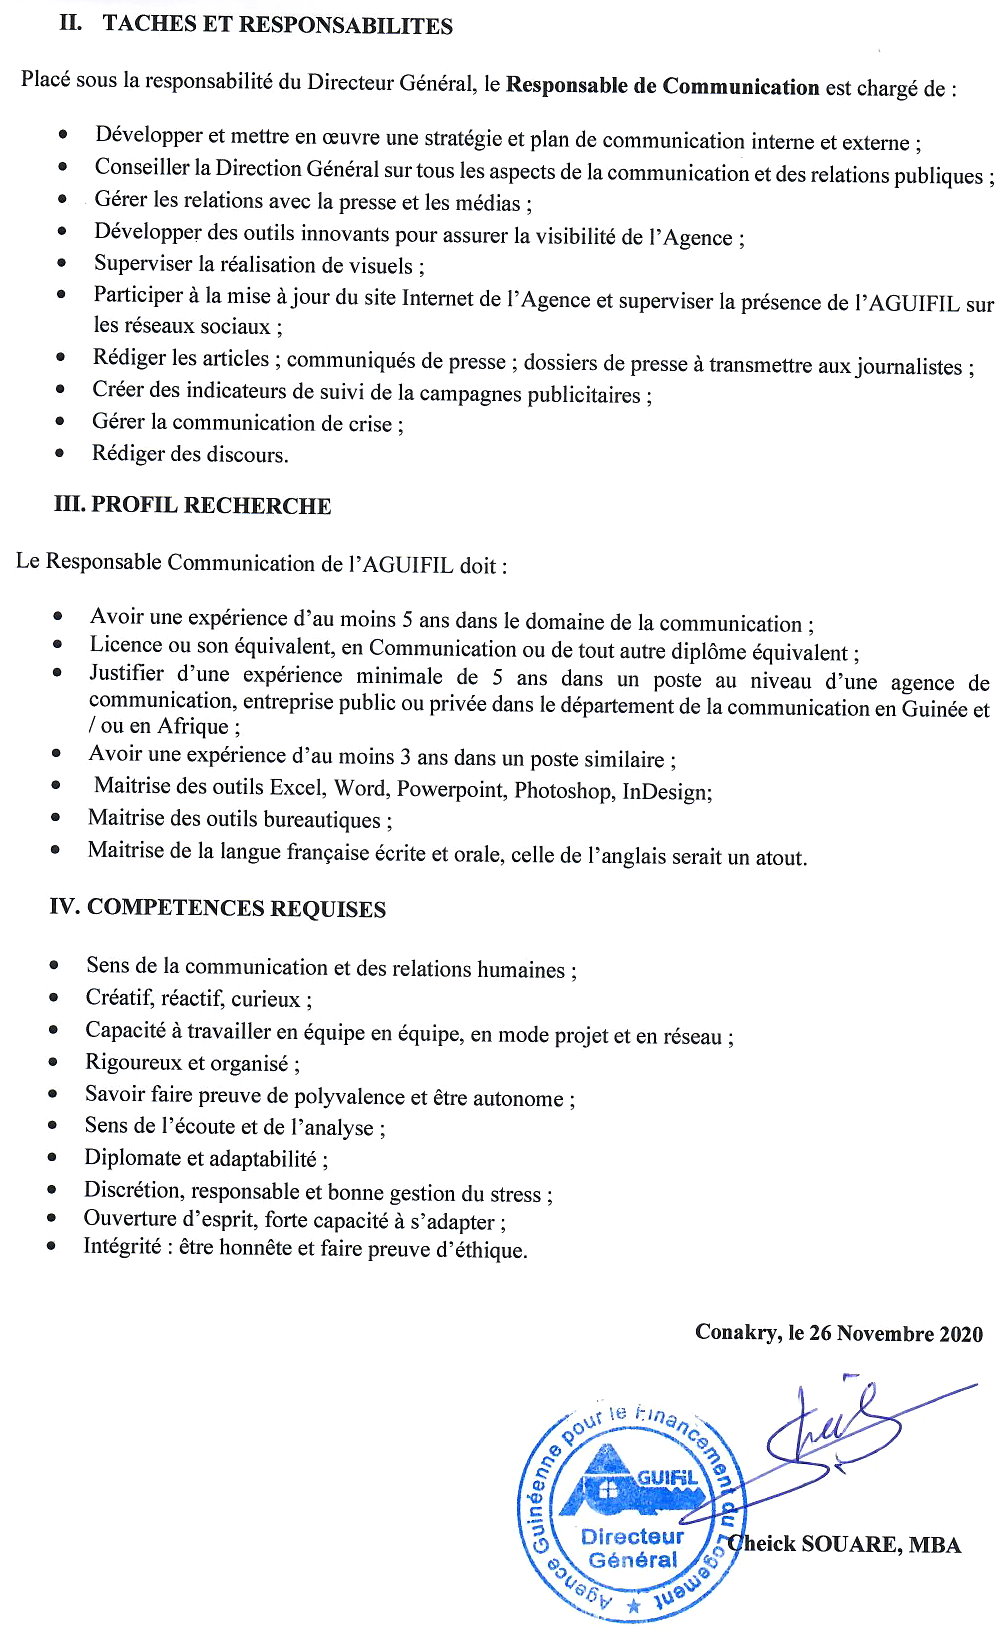 Recrutement en guinée - Aguifil page 2